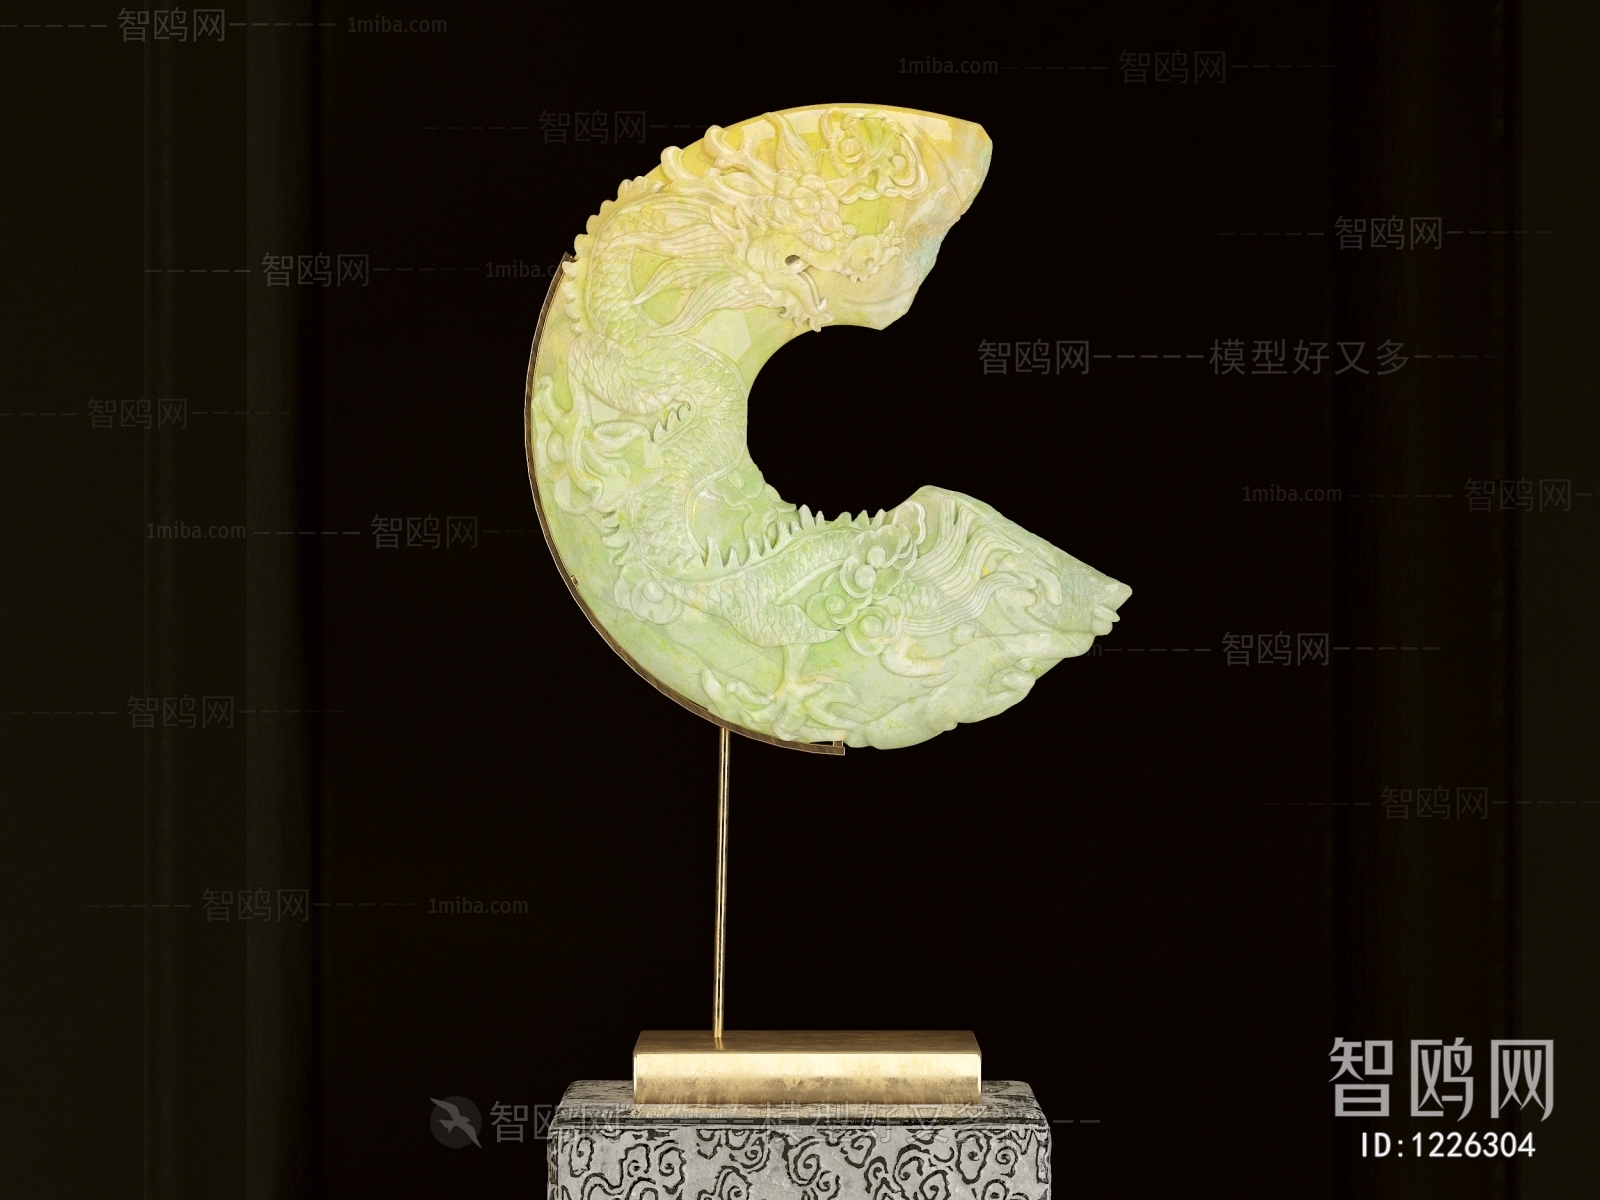 Chinese Style Decorative Set